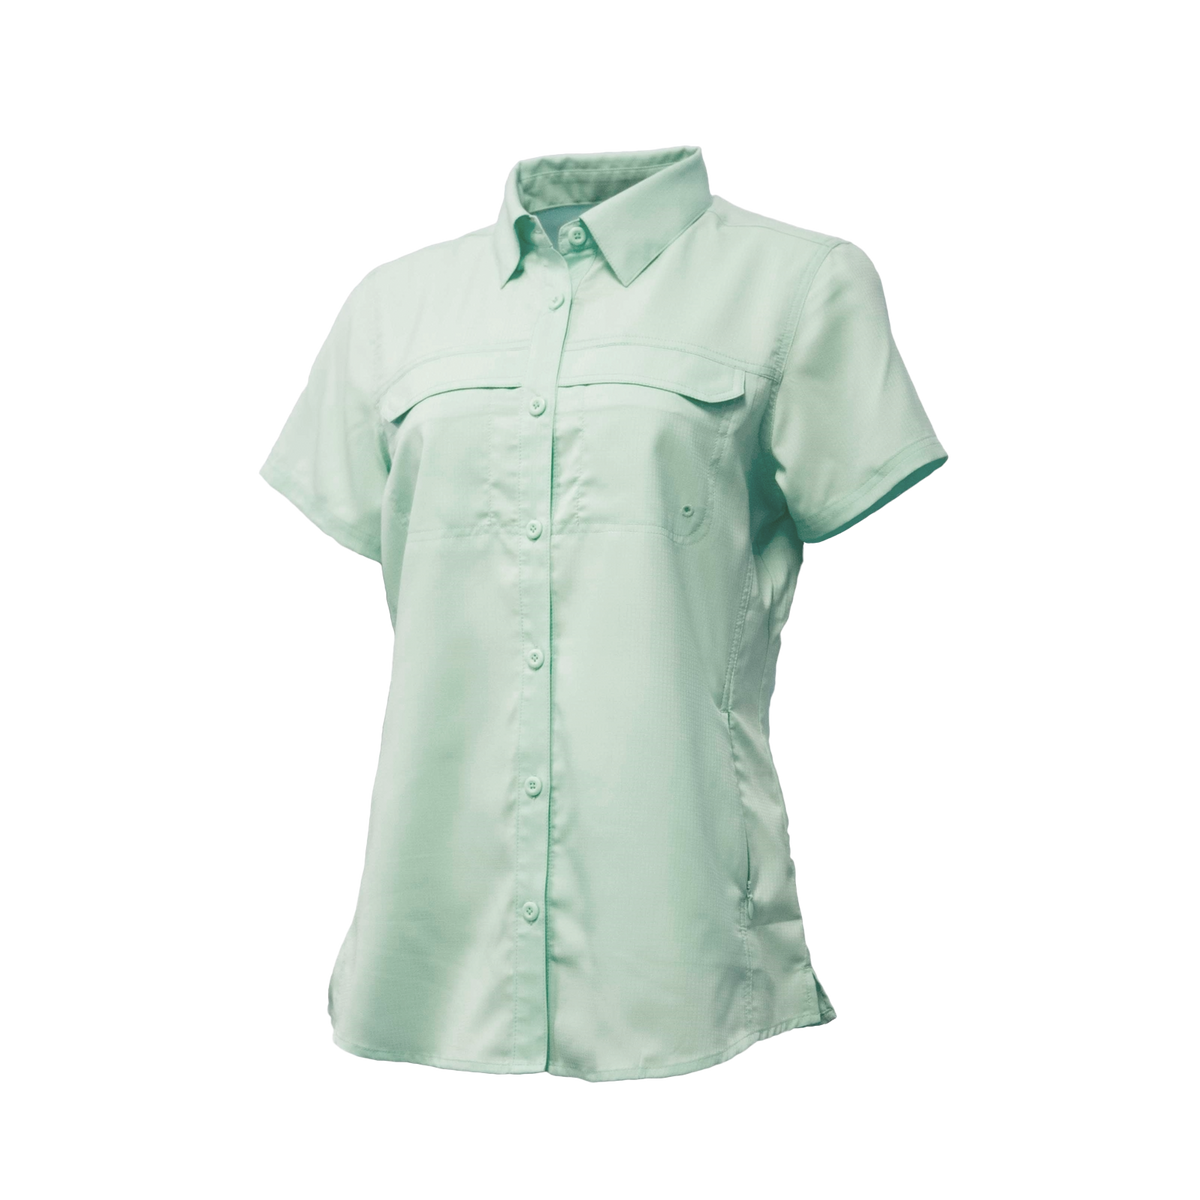 Fintech Women's Short Sleeve Fishing Shirt - XL, Blue